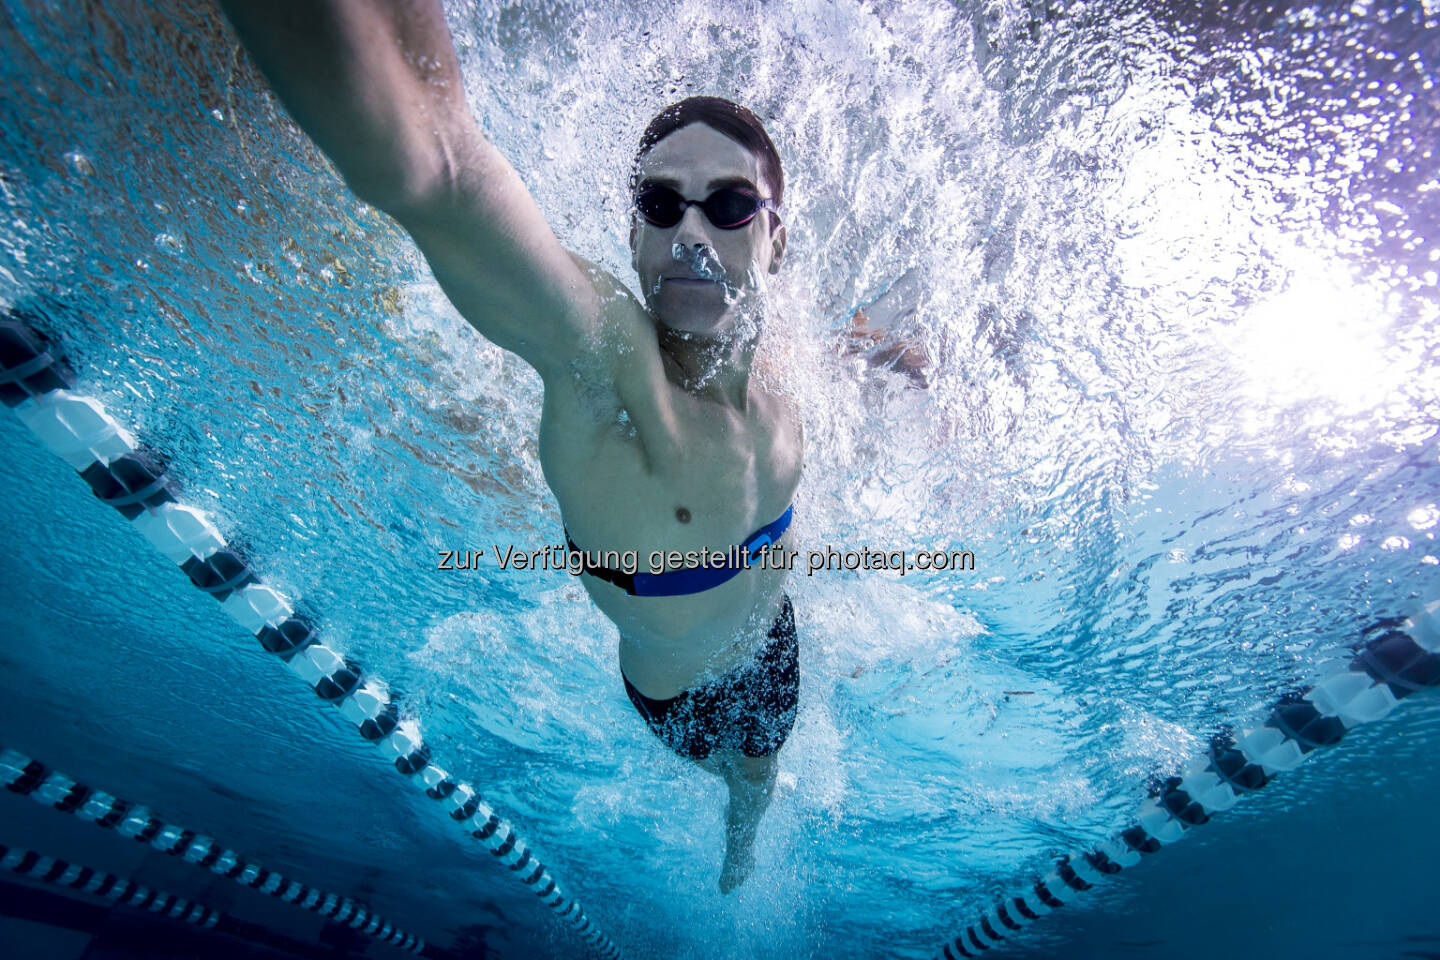 Herzfrequenzmessung unter Wasser :  Neue Brustgurte von Garmin versprechen auch für Schwimmer und Triathleten verwertbare Informationen über die Leistung im Wasser : Fotocredit: Garmin